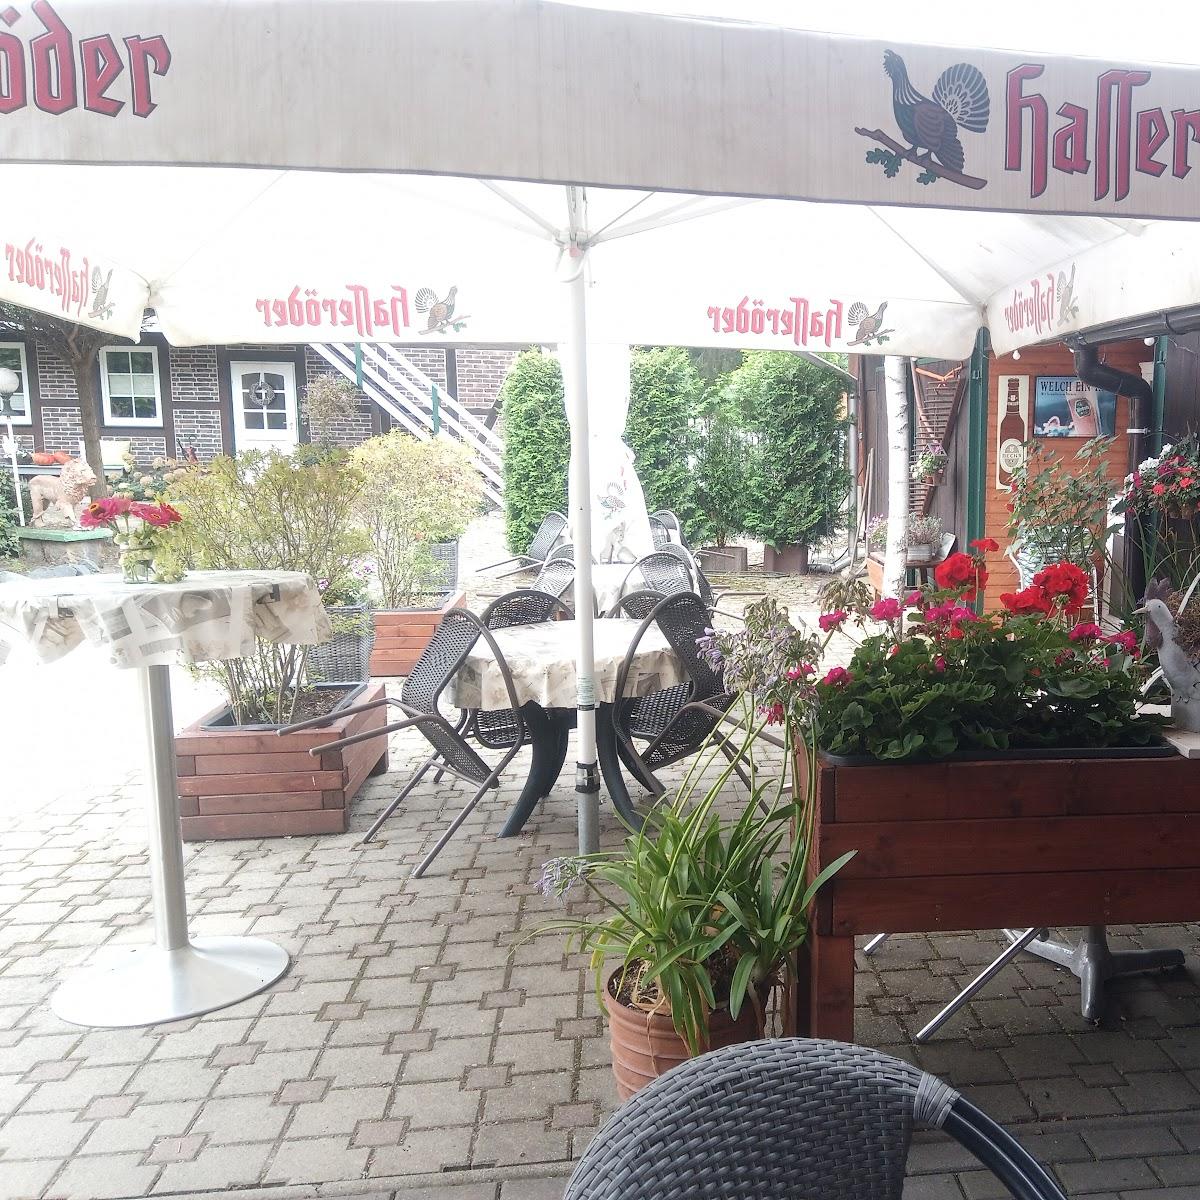 Restaurant "Joker Inh. Olaf Klingemann" in Wernigerode